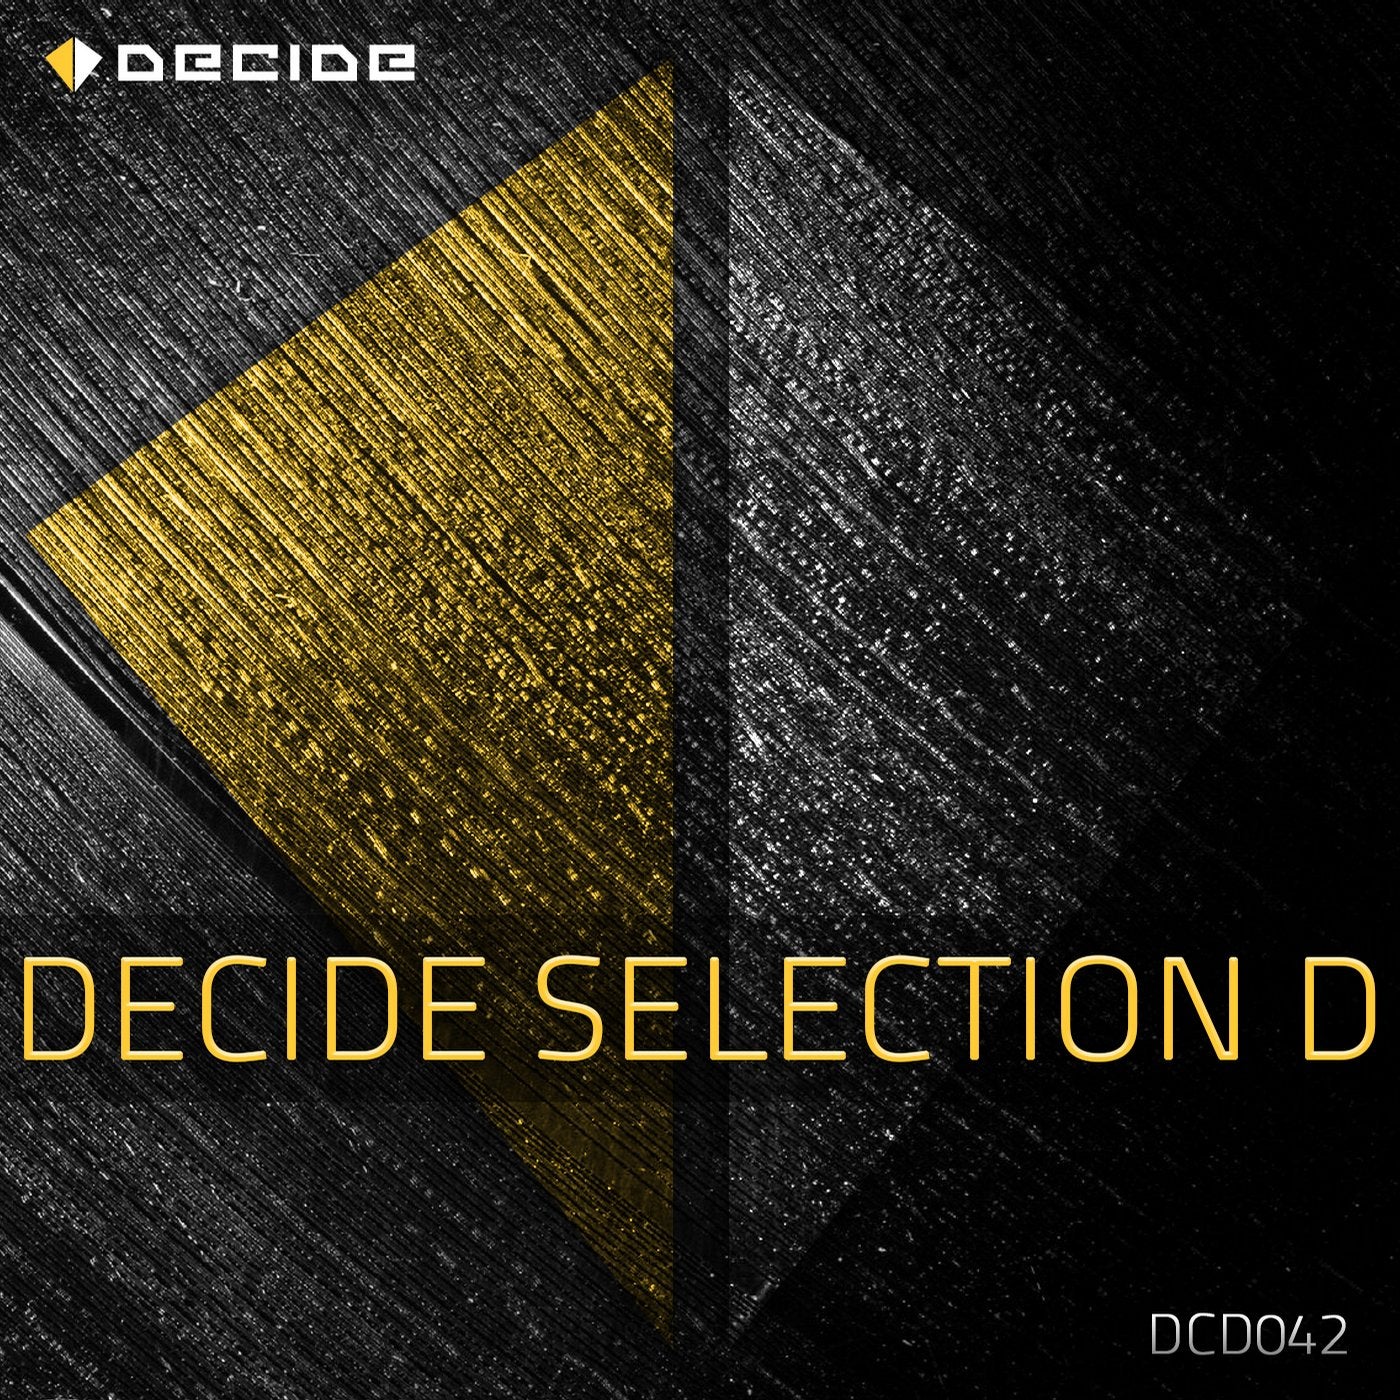 DECIDE Selection D